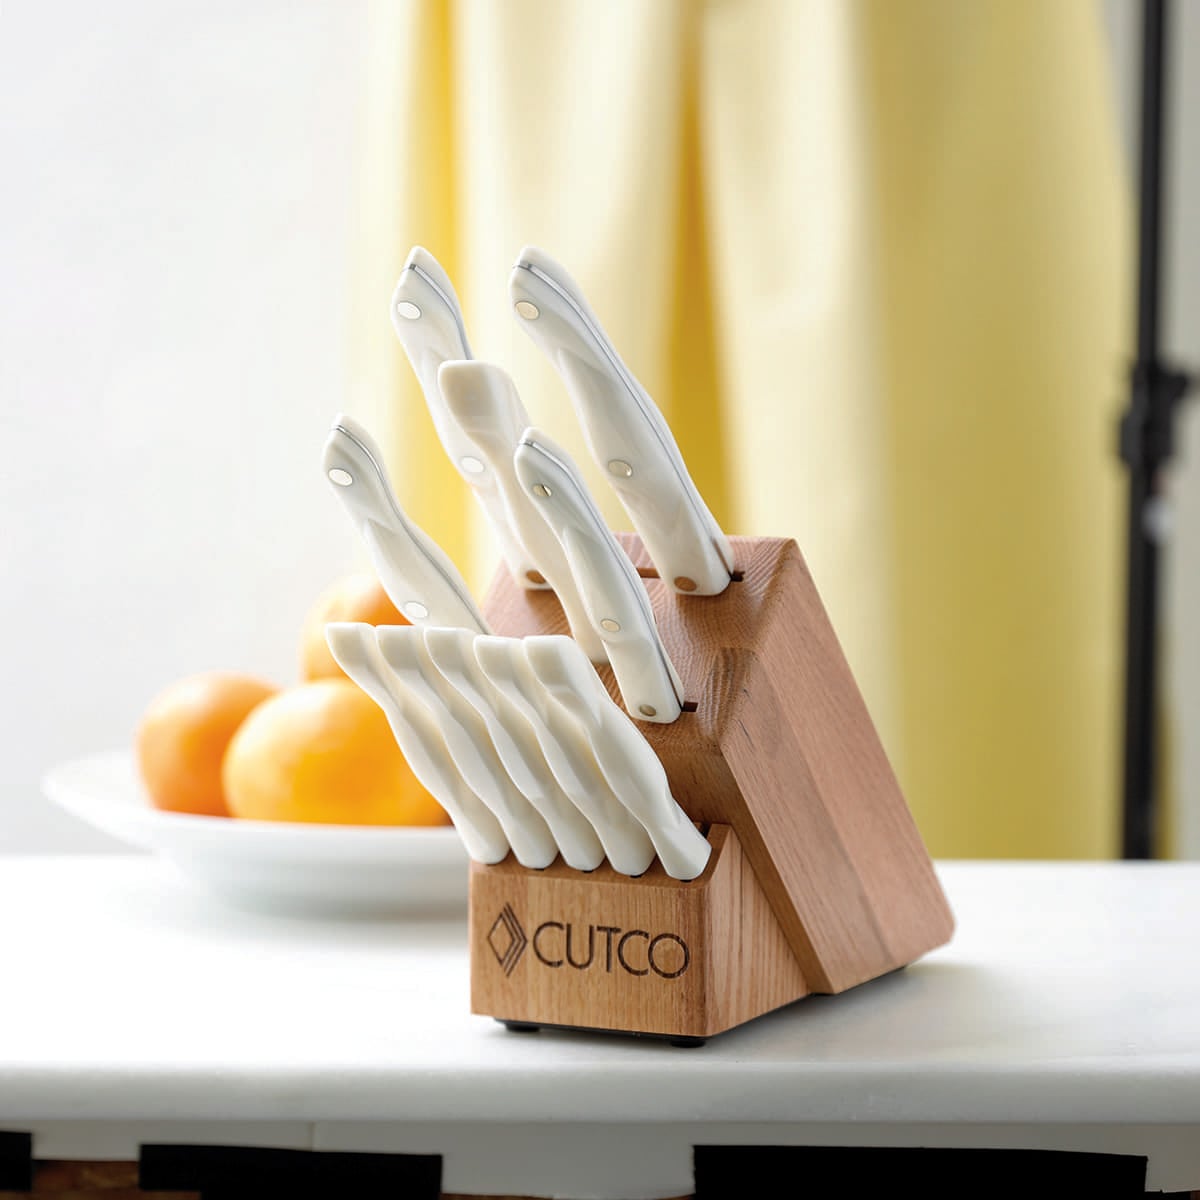 Cutco Homemaker + 8 Pearl White Knife Set with Oak Block